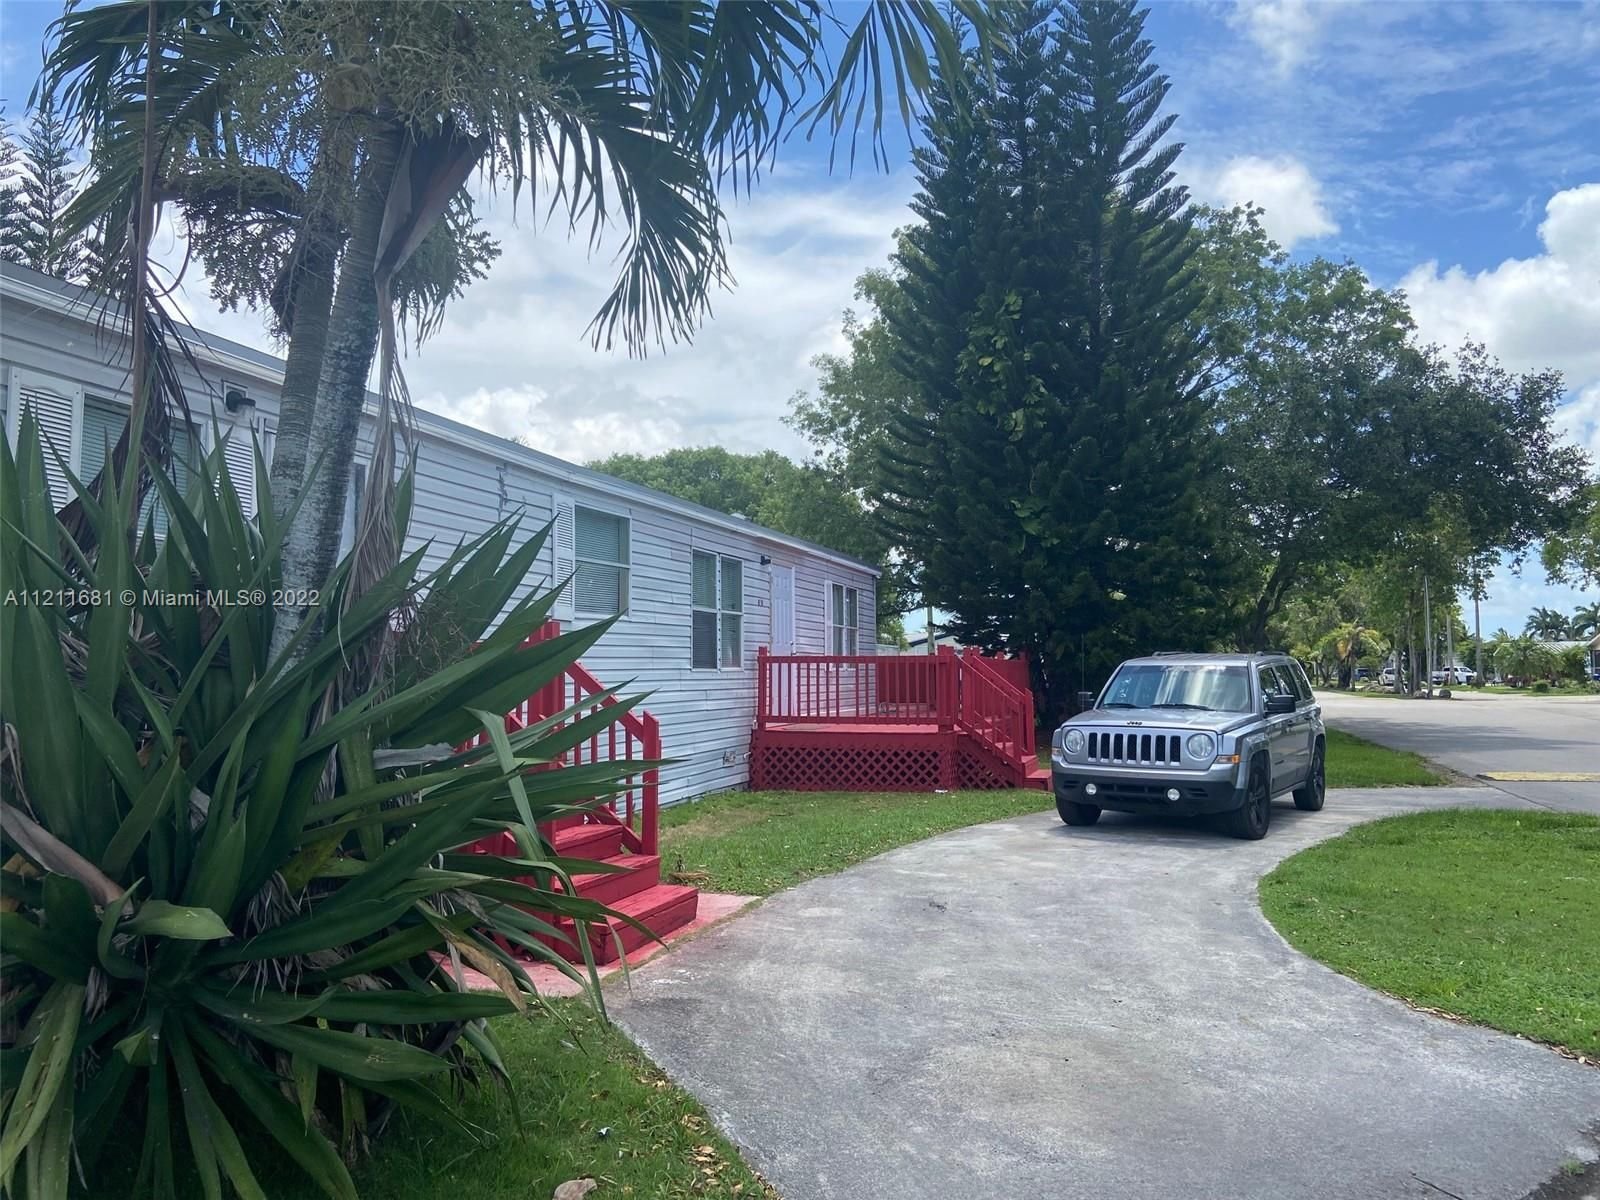 Real estate property located at 19800 180th, Miami-Dade County, Miami, FL